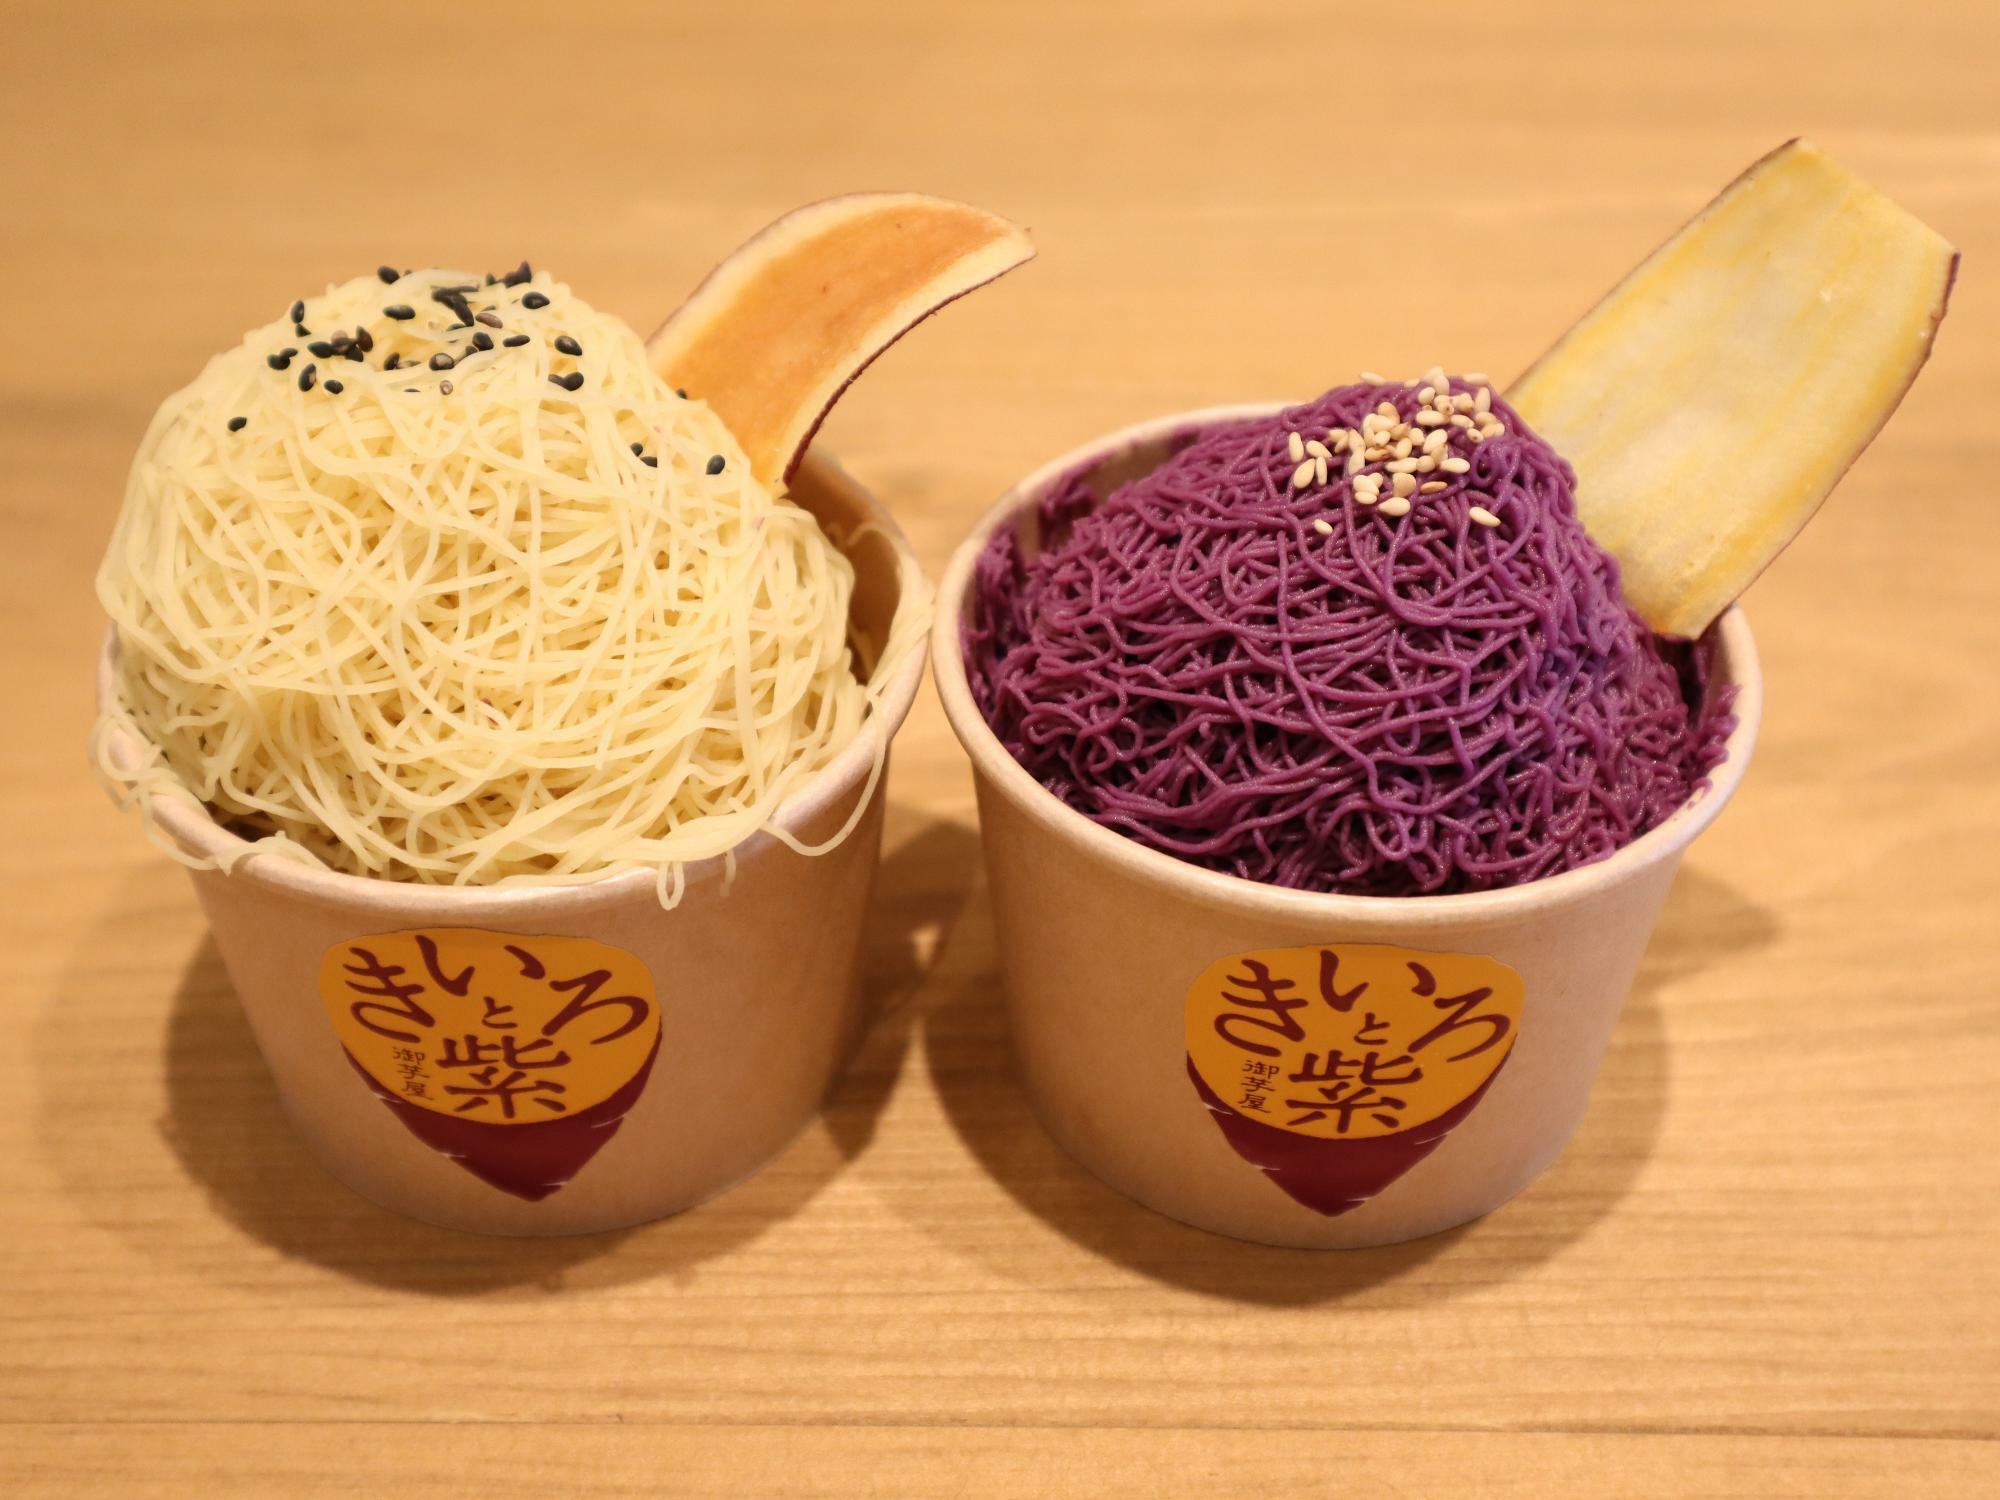 「お芋モンブラン（各、税込800円）」。左が「黄色」で、右が「紫」。